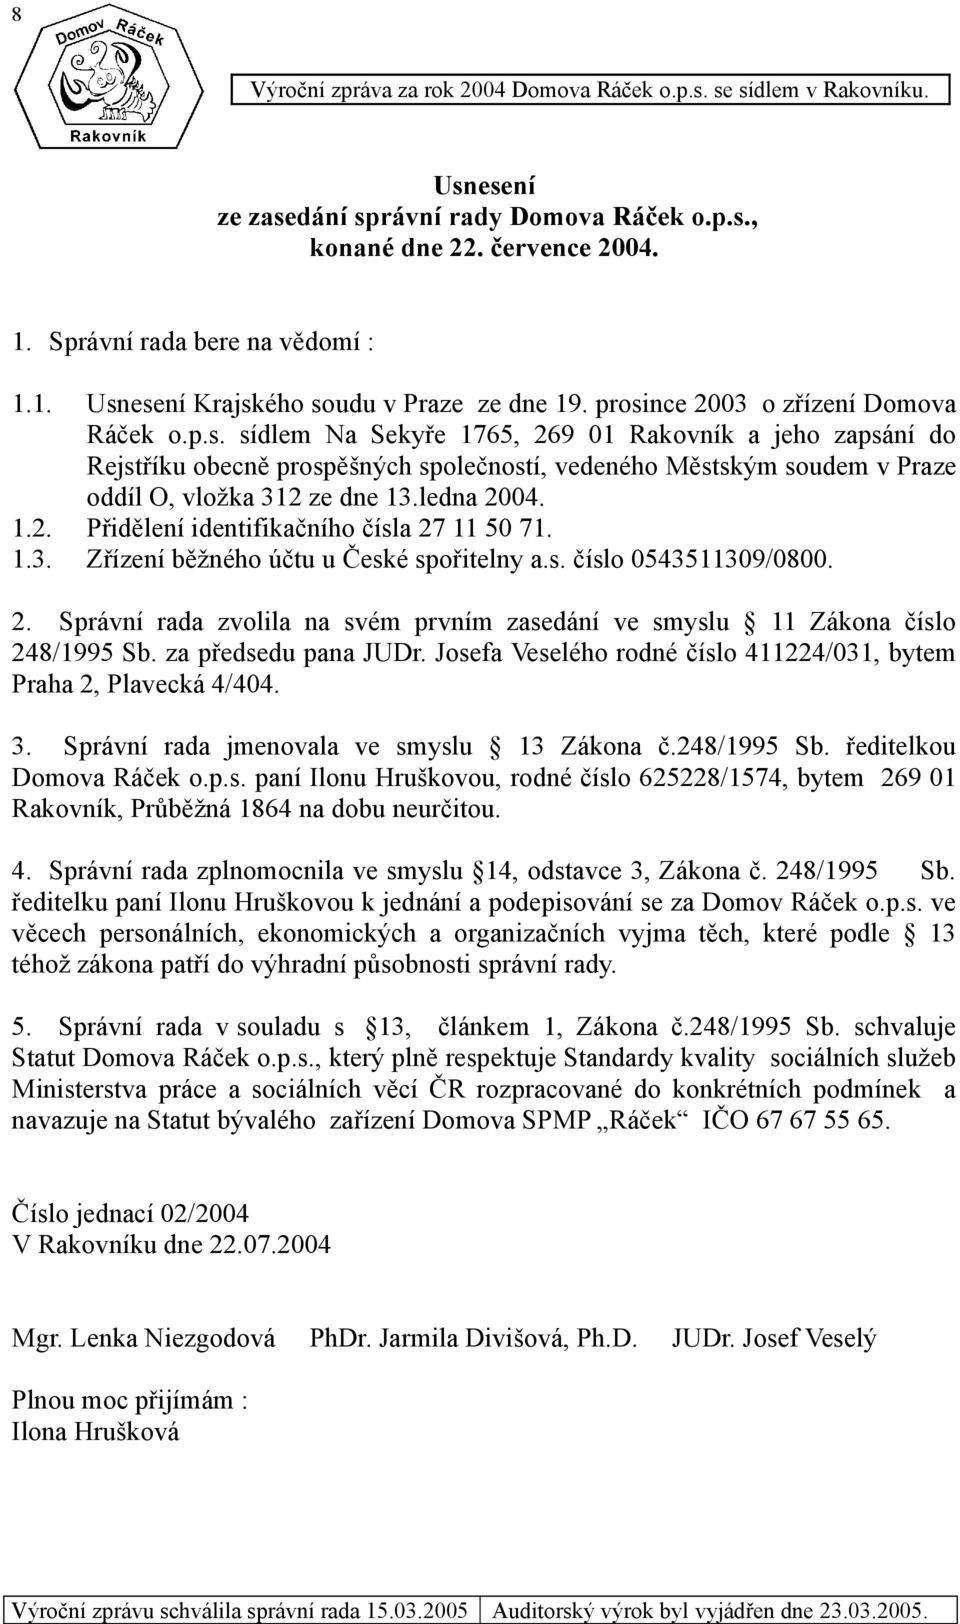 ledna 2004. 1.2. Přidělení identifikačního čísla 27 11 50 71. 1.3. Zřízení běžného účtu u České spořitelny a.s. číslo 0543511309/0800. 2. Správní rada zvolila na svém prvním zasedání ve smyslu 11 Zákona číslo 248/1995 Sb.